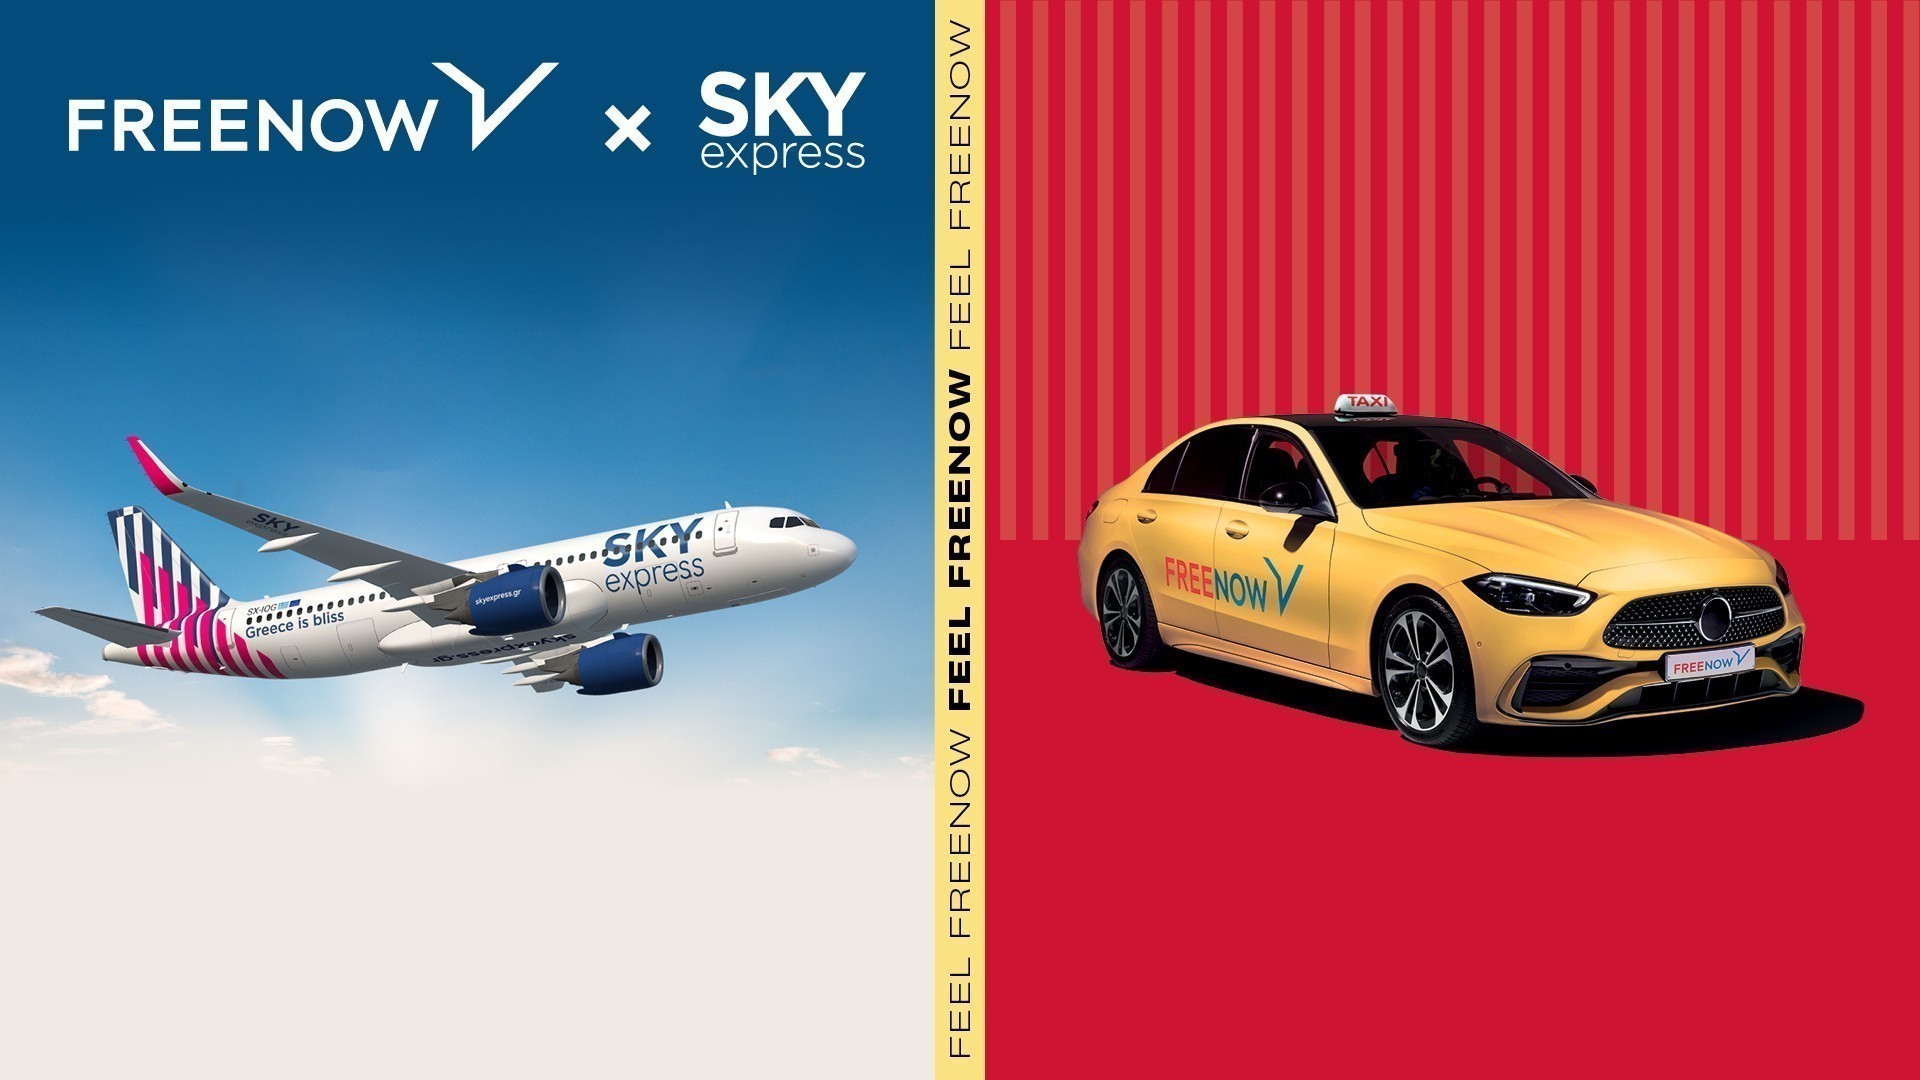 Συνεργασία FREENOW με SKY express για την απόλυτη ταξιδιωτική εμπειρία